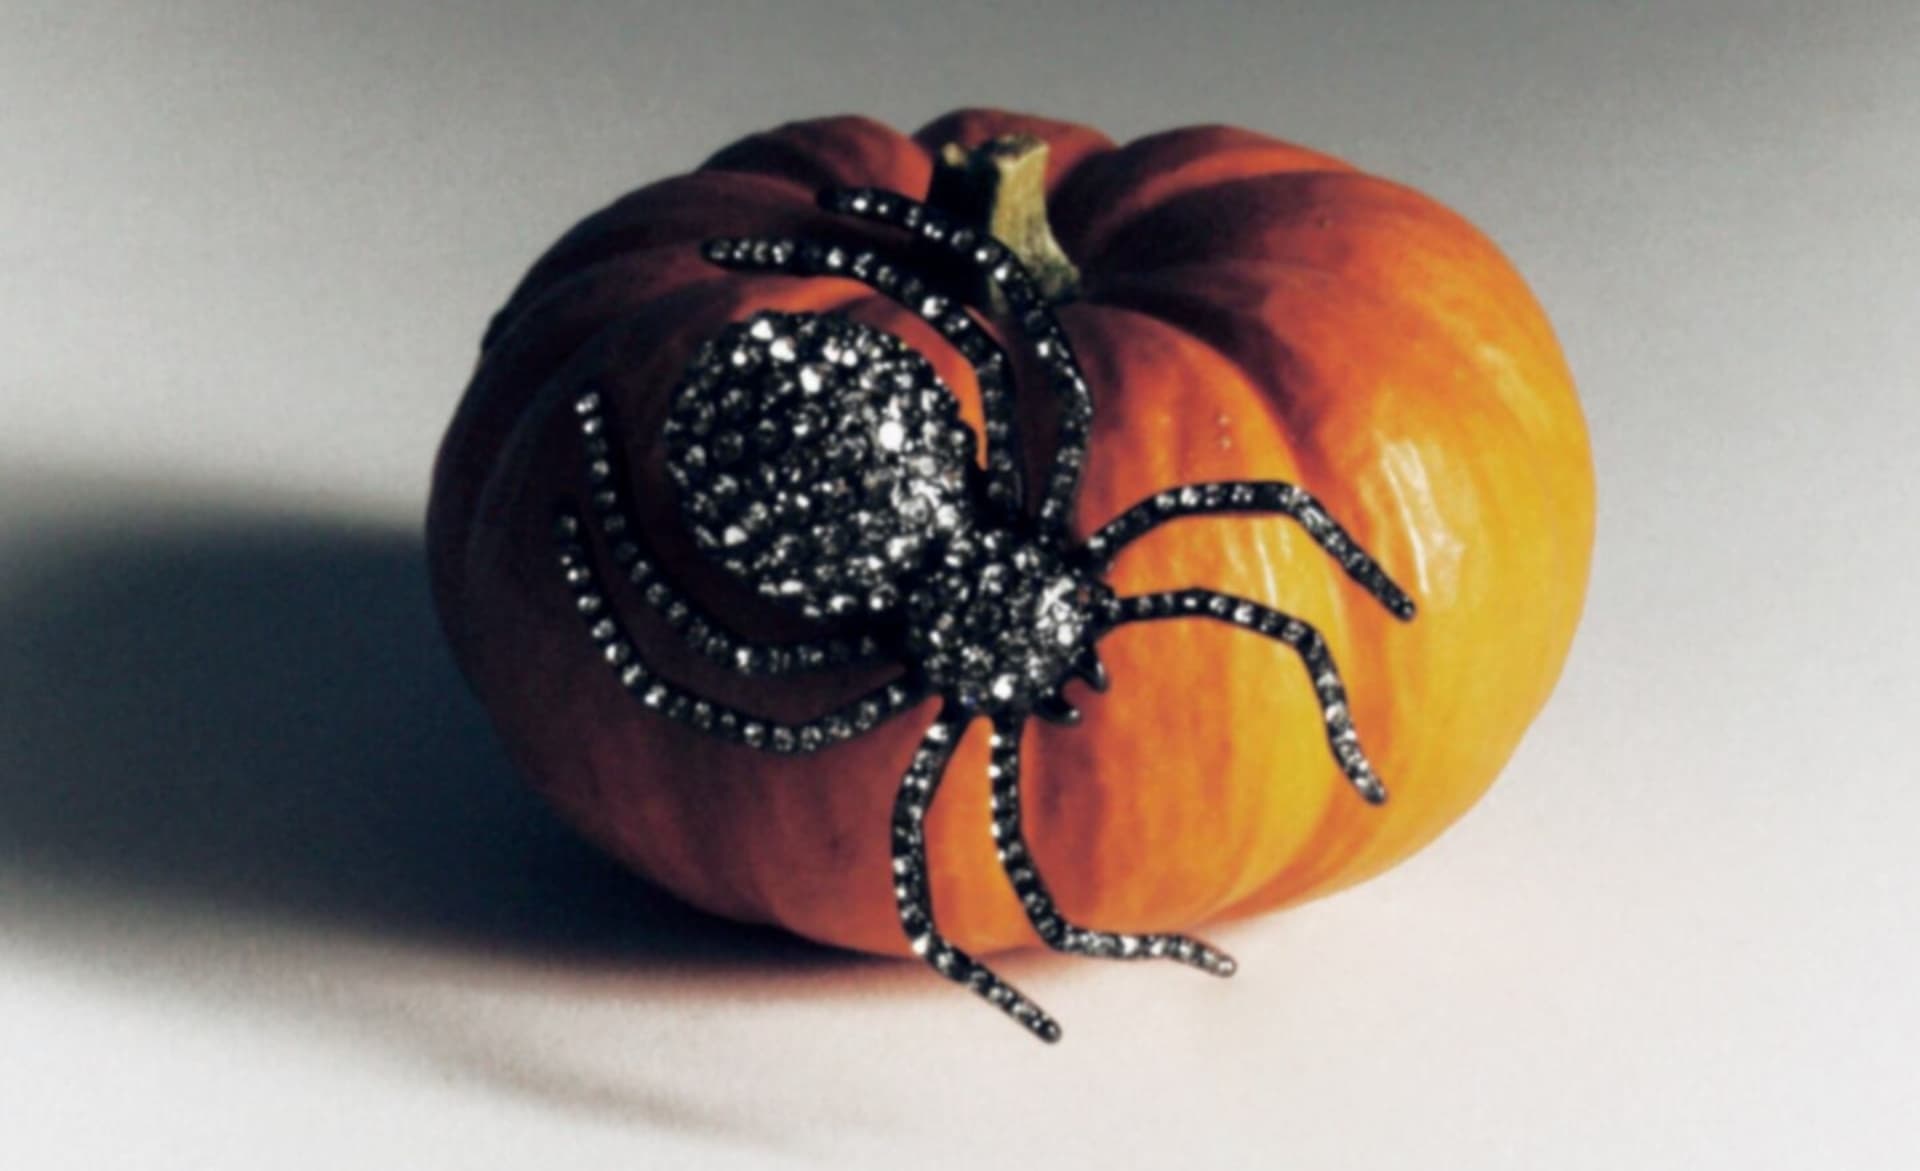 Zara presentó su nueva cápsula inspirada en Halloween